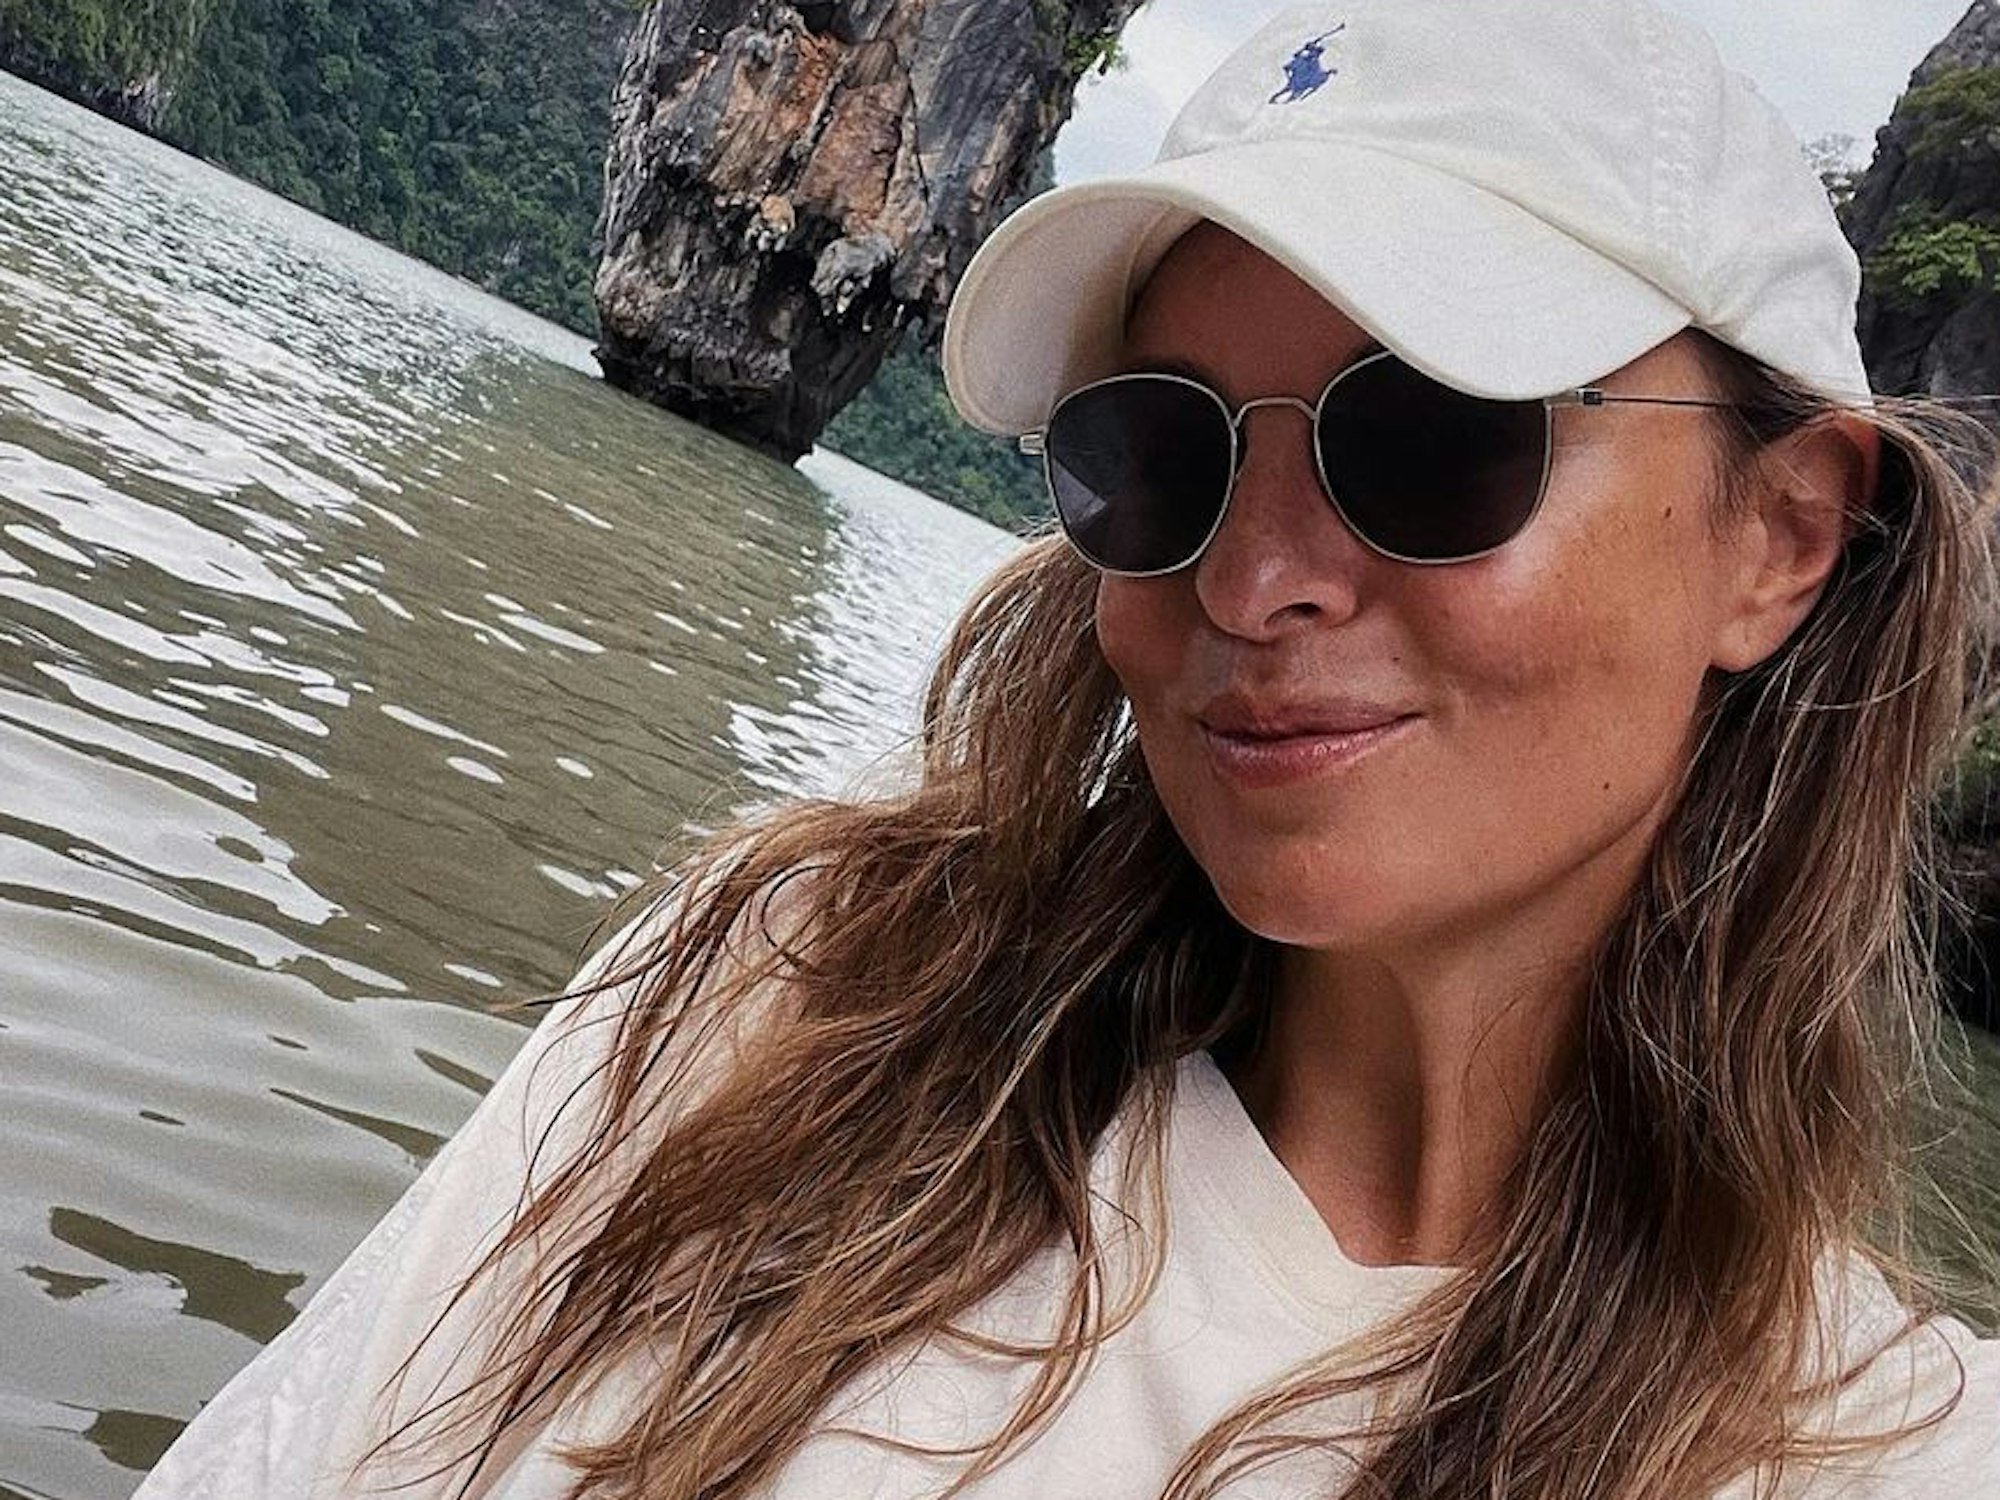 Laura Wontorra ist seit knapp eineinhalb Jahren offiziell Single. Zum Archiv-Foto: Laura Wontorra veröffentlichte am 5. Dezember 2022 auf ihrem Instagram-Account eine Fotostrecke von sich vor der weltberühmten James-Bond-Insel.